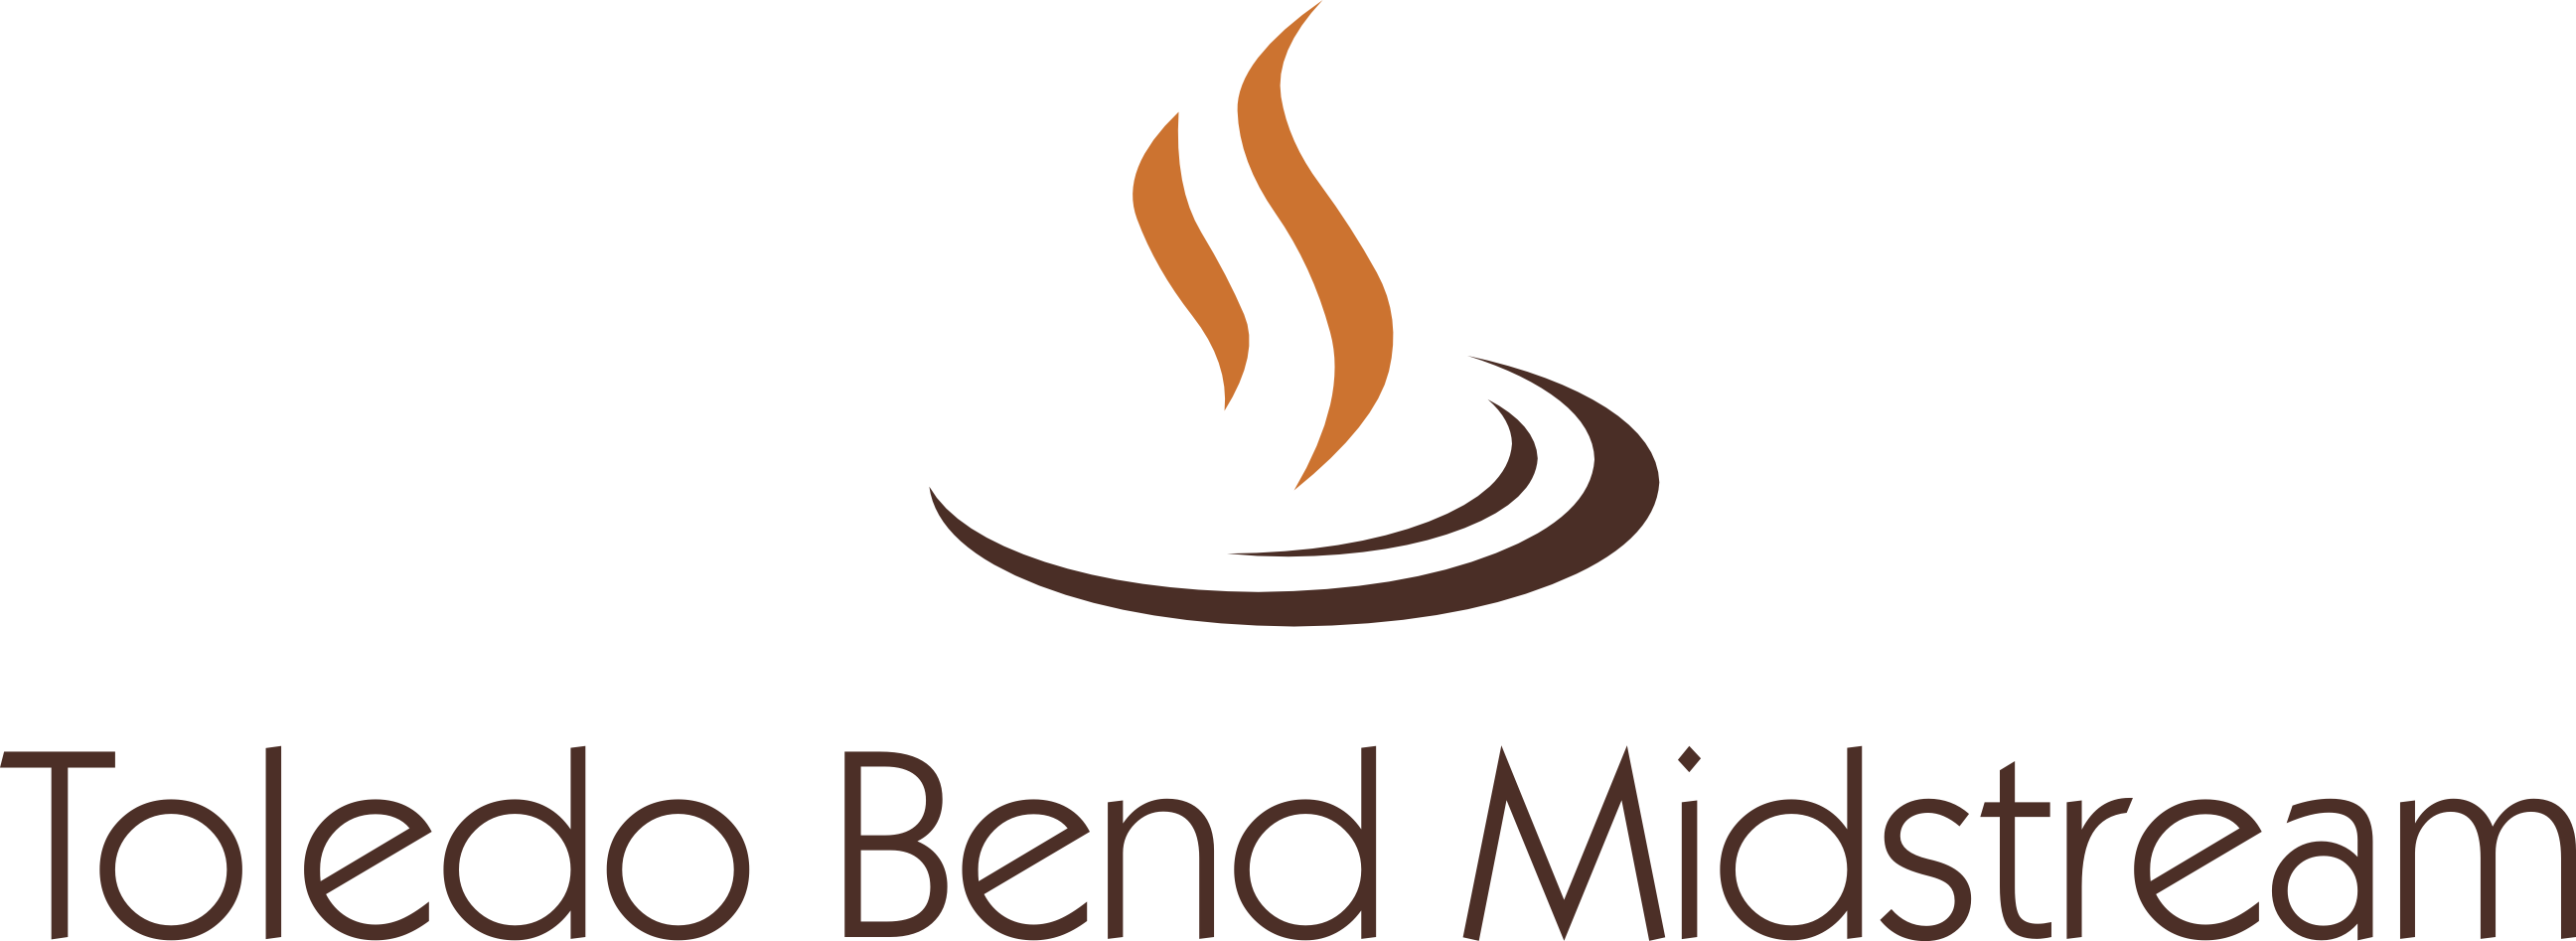 Toledo Bend Midstream logo